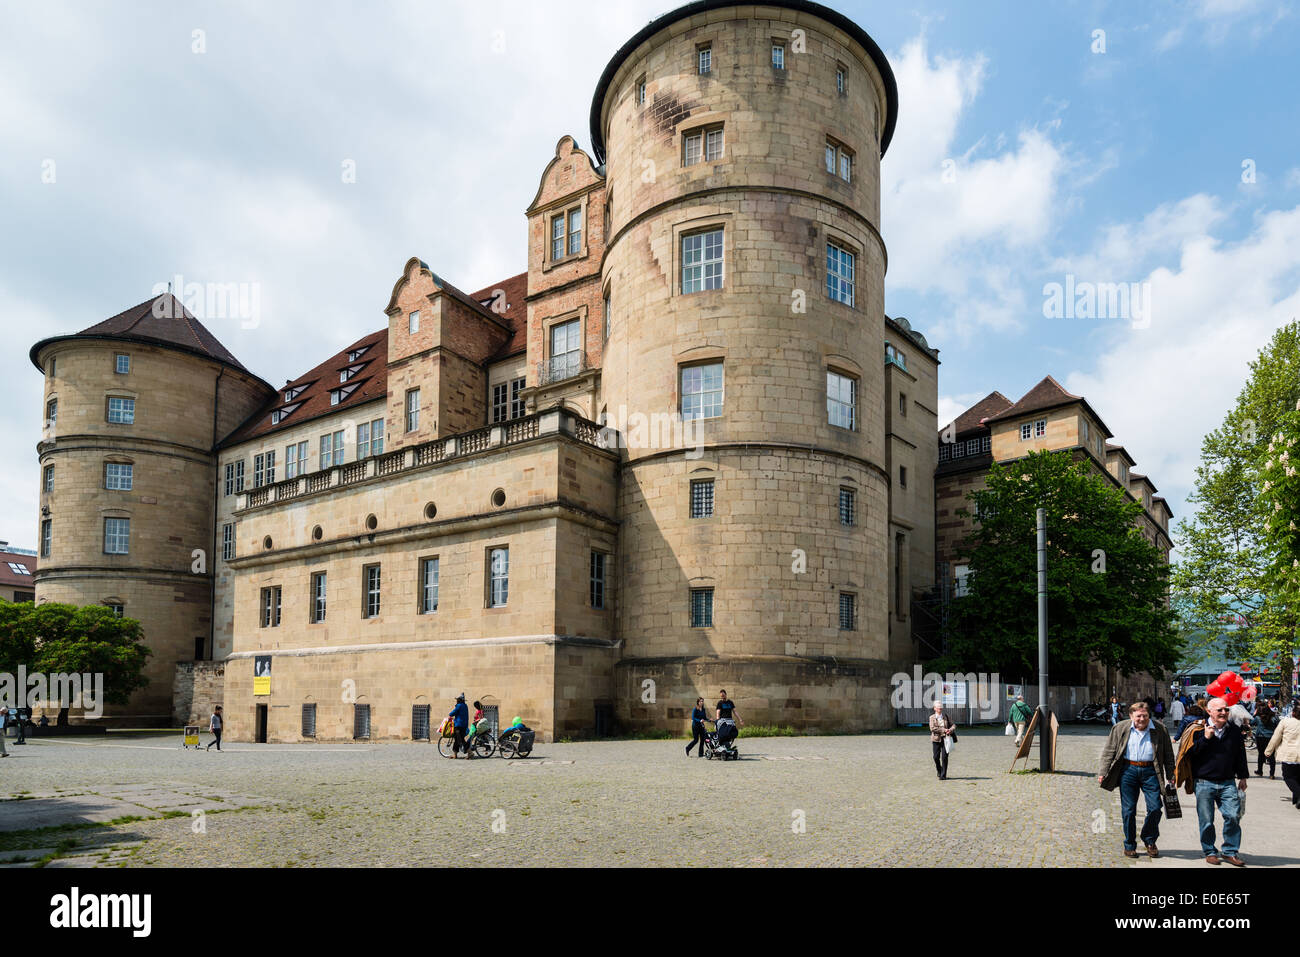 The old castle (Altes Schloss) of Stuttgart, Germany Stock Photo